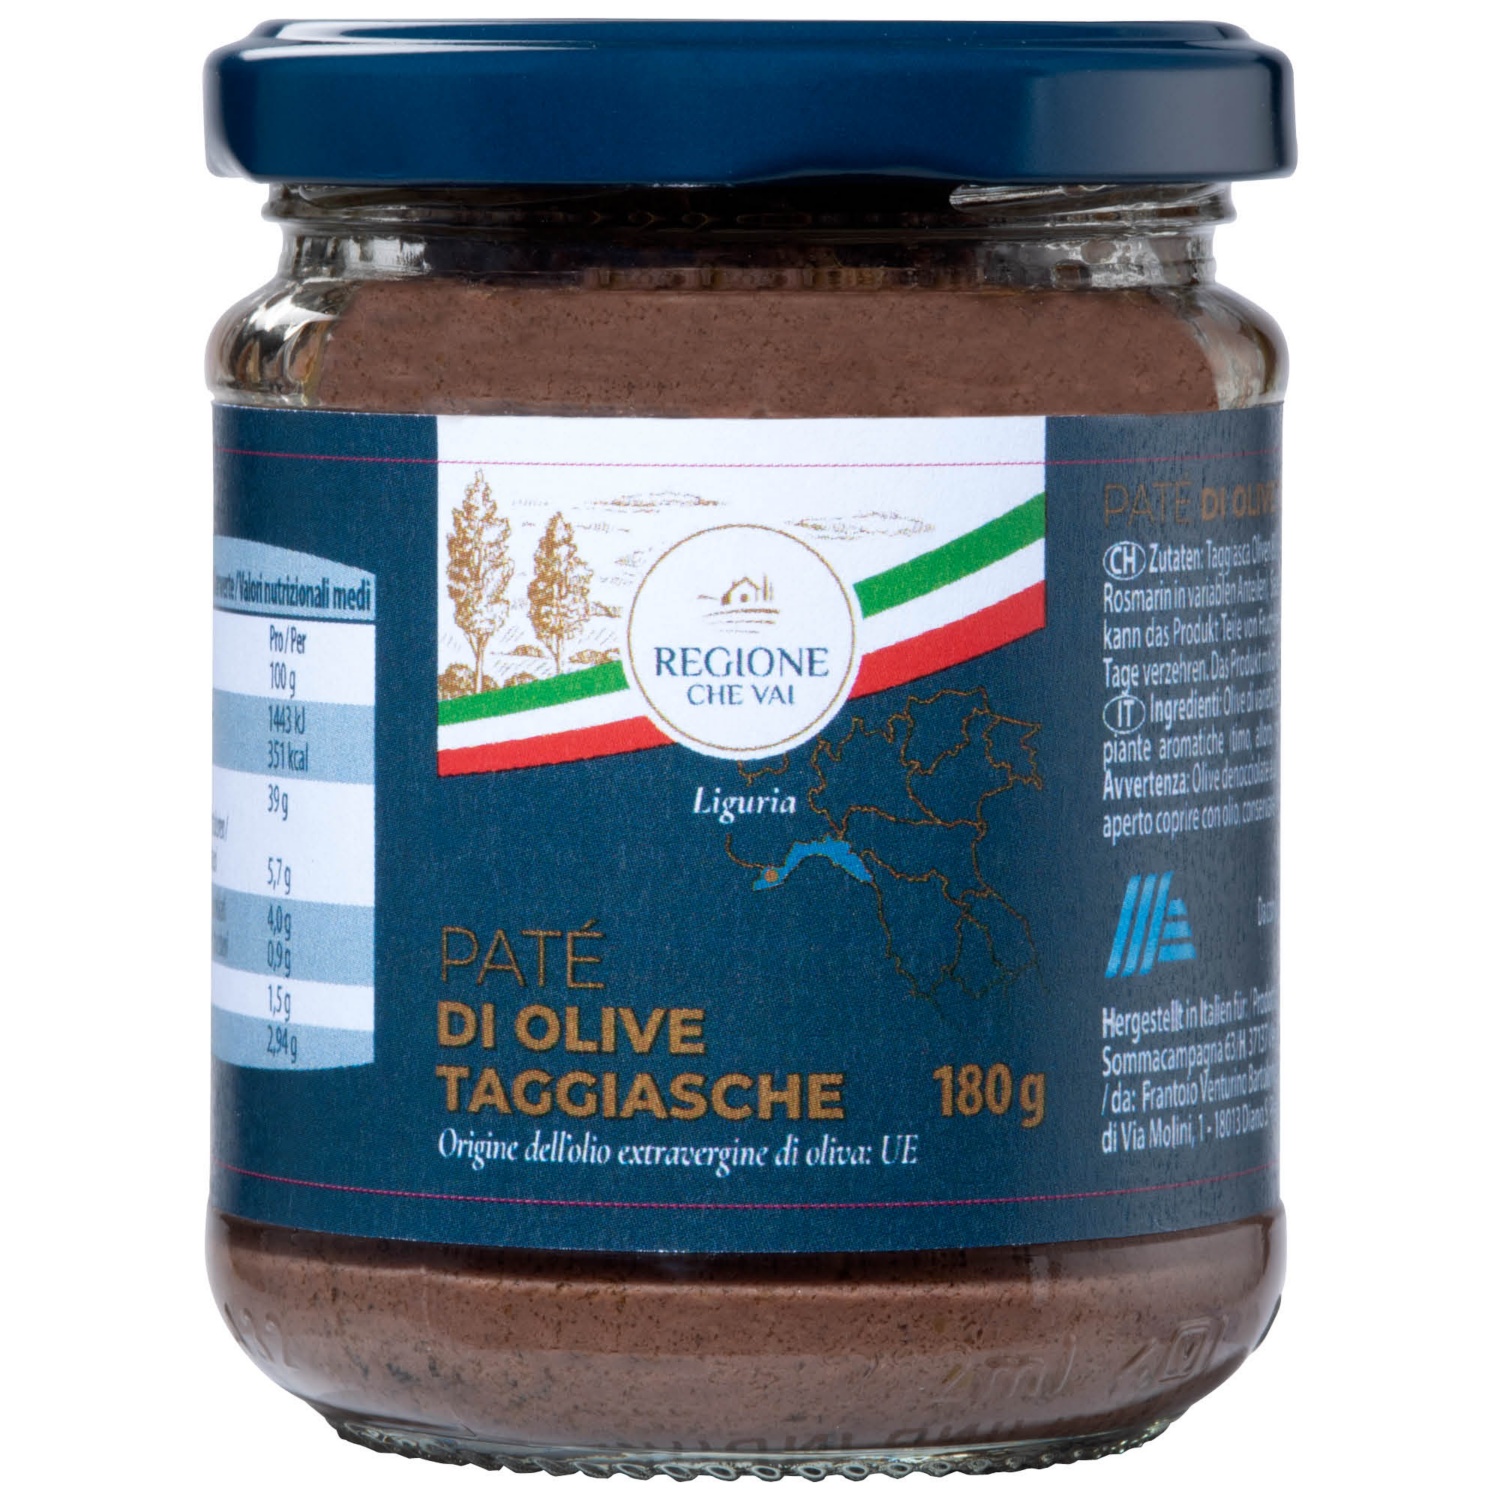 REGIONE CHE VAI Olivenbrotaufstrich aus Taggiasca-Oliven